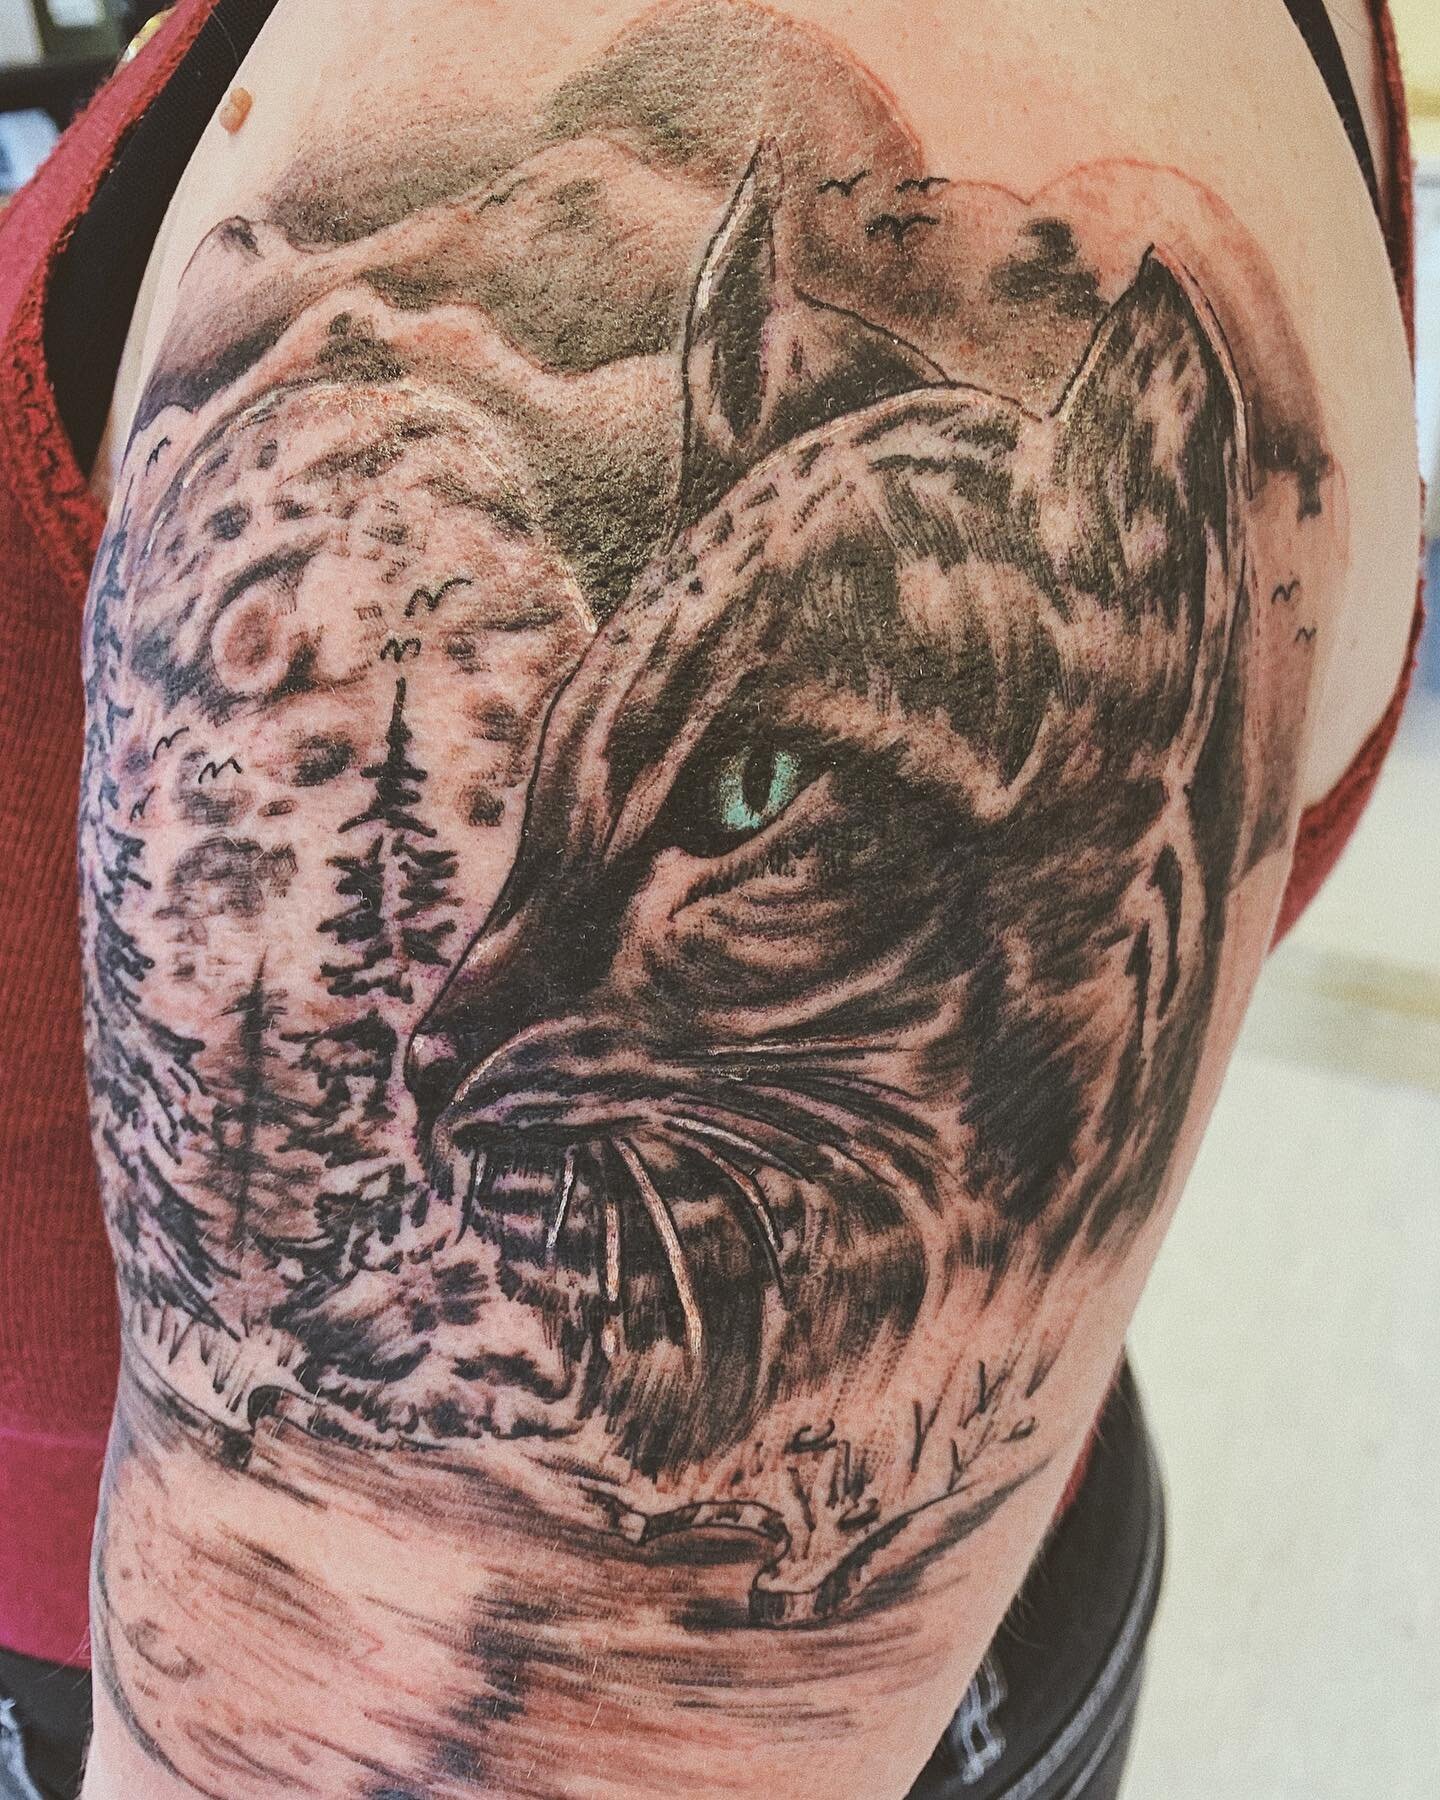 🐱🐈
&bull;
&bull;
&bull;
#bl&aelig;kkcompagniet #hamar #norway #tatovering #tattoo #tattooed #tattoos #inked #ink #photooftheday #insta #instagram #follow #blackwork #tattoogirl #inkedgirls #cat #animal #artist #art #tattooartist #tattooideas #drawi